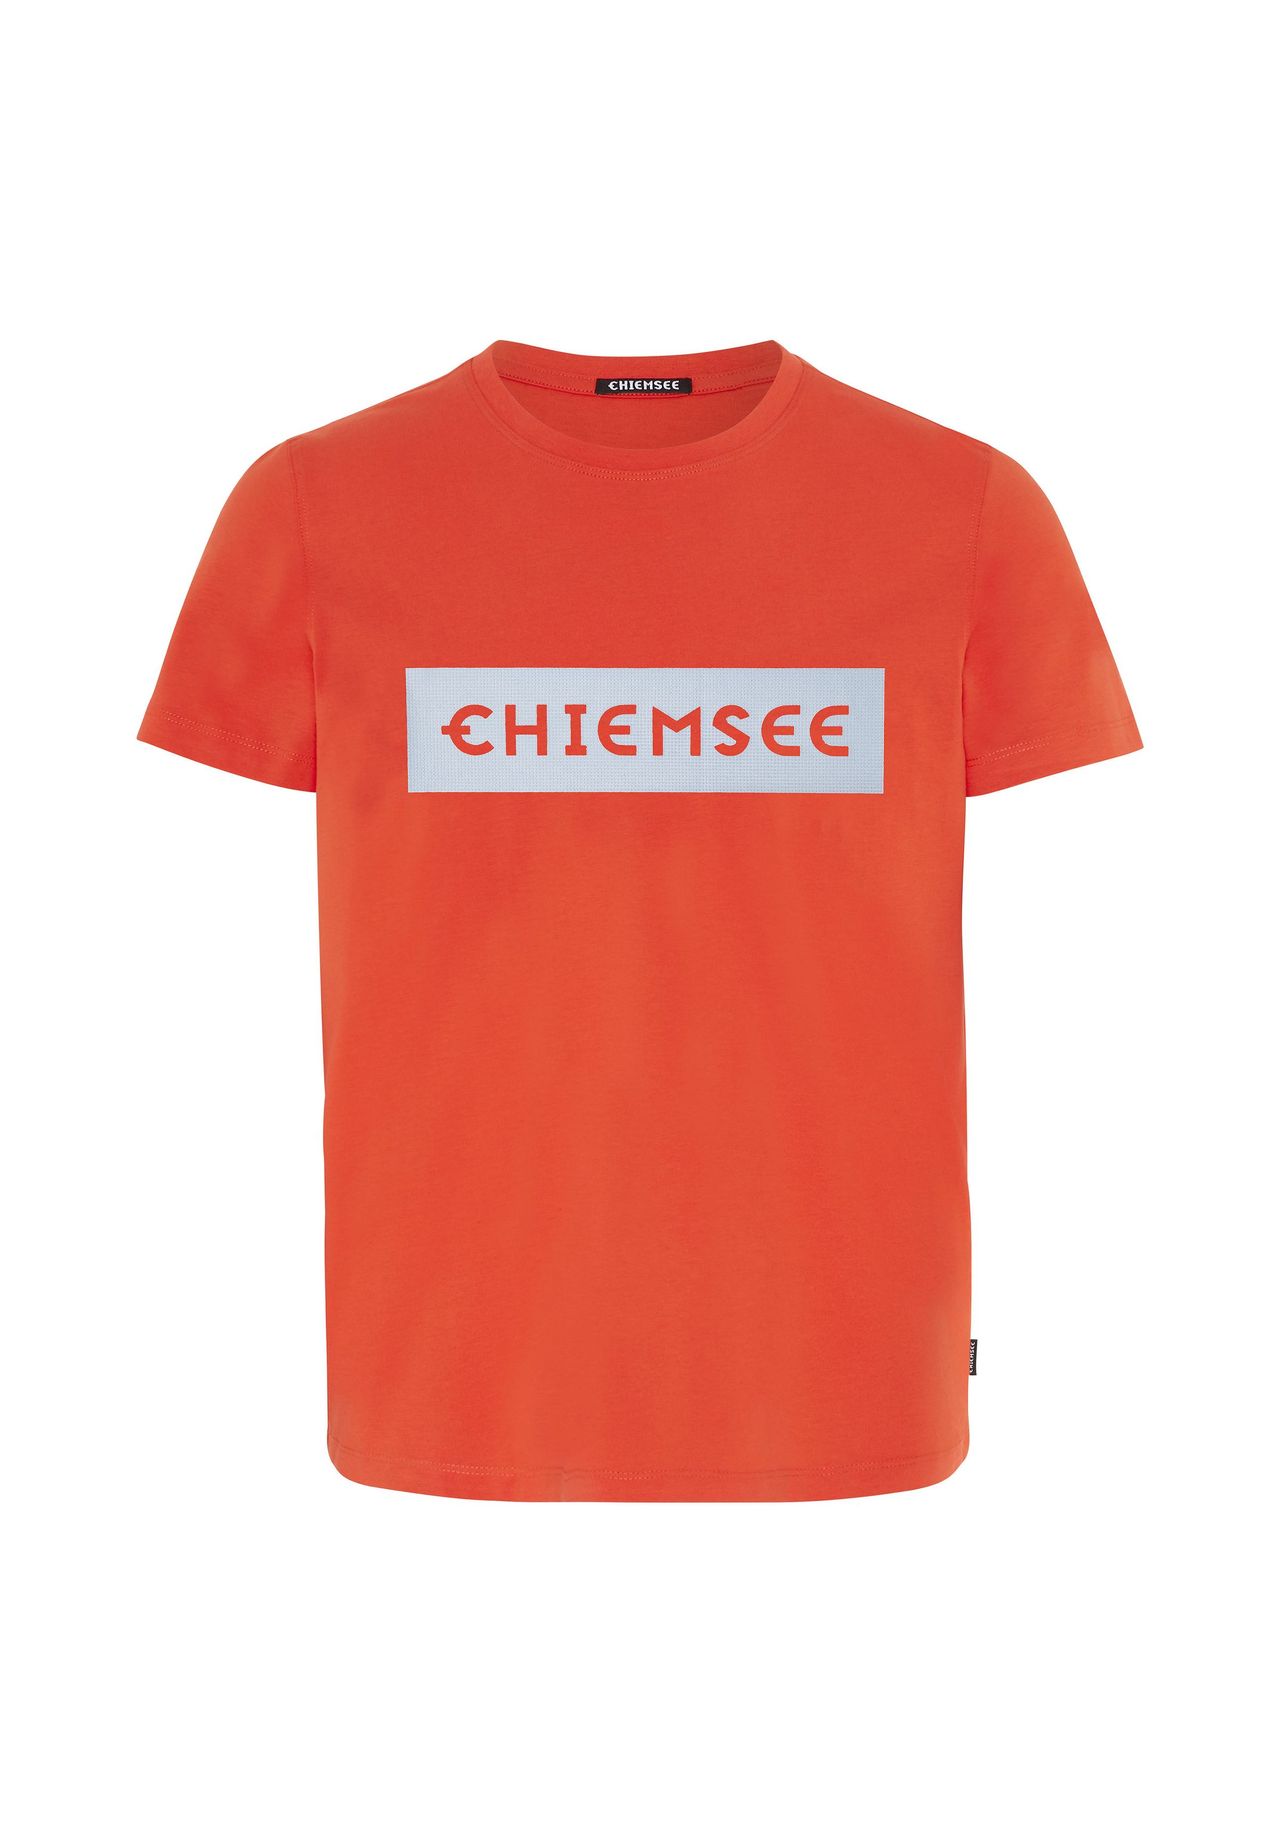 CHIEMSEE T-Shirt mit plakativem Markenschriftzug | GALERIA